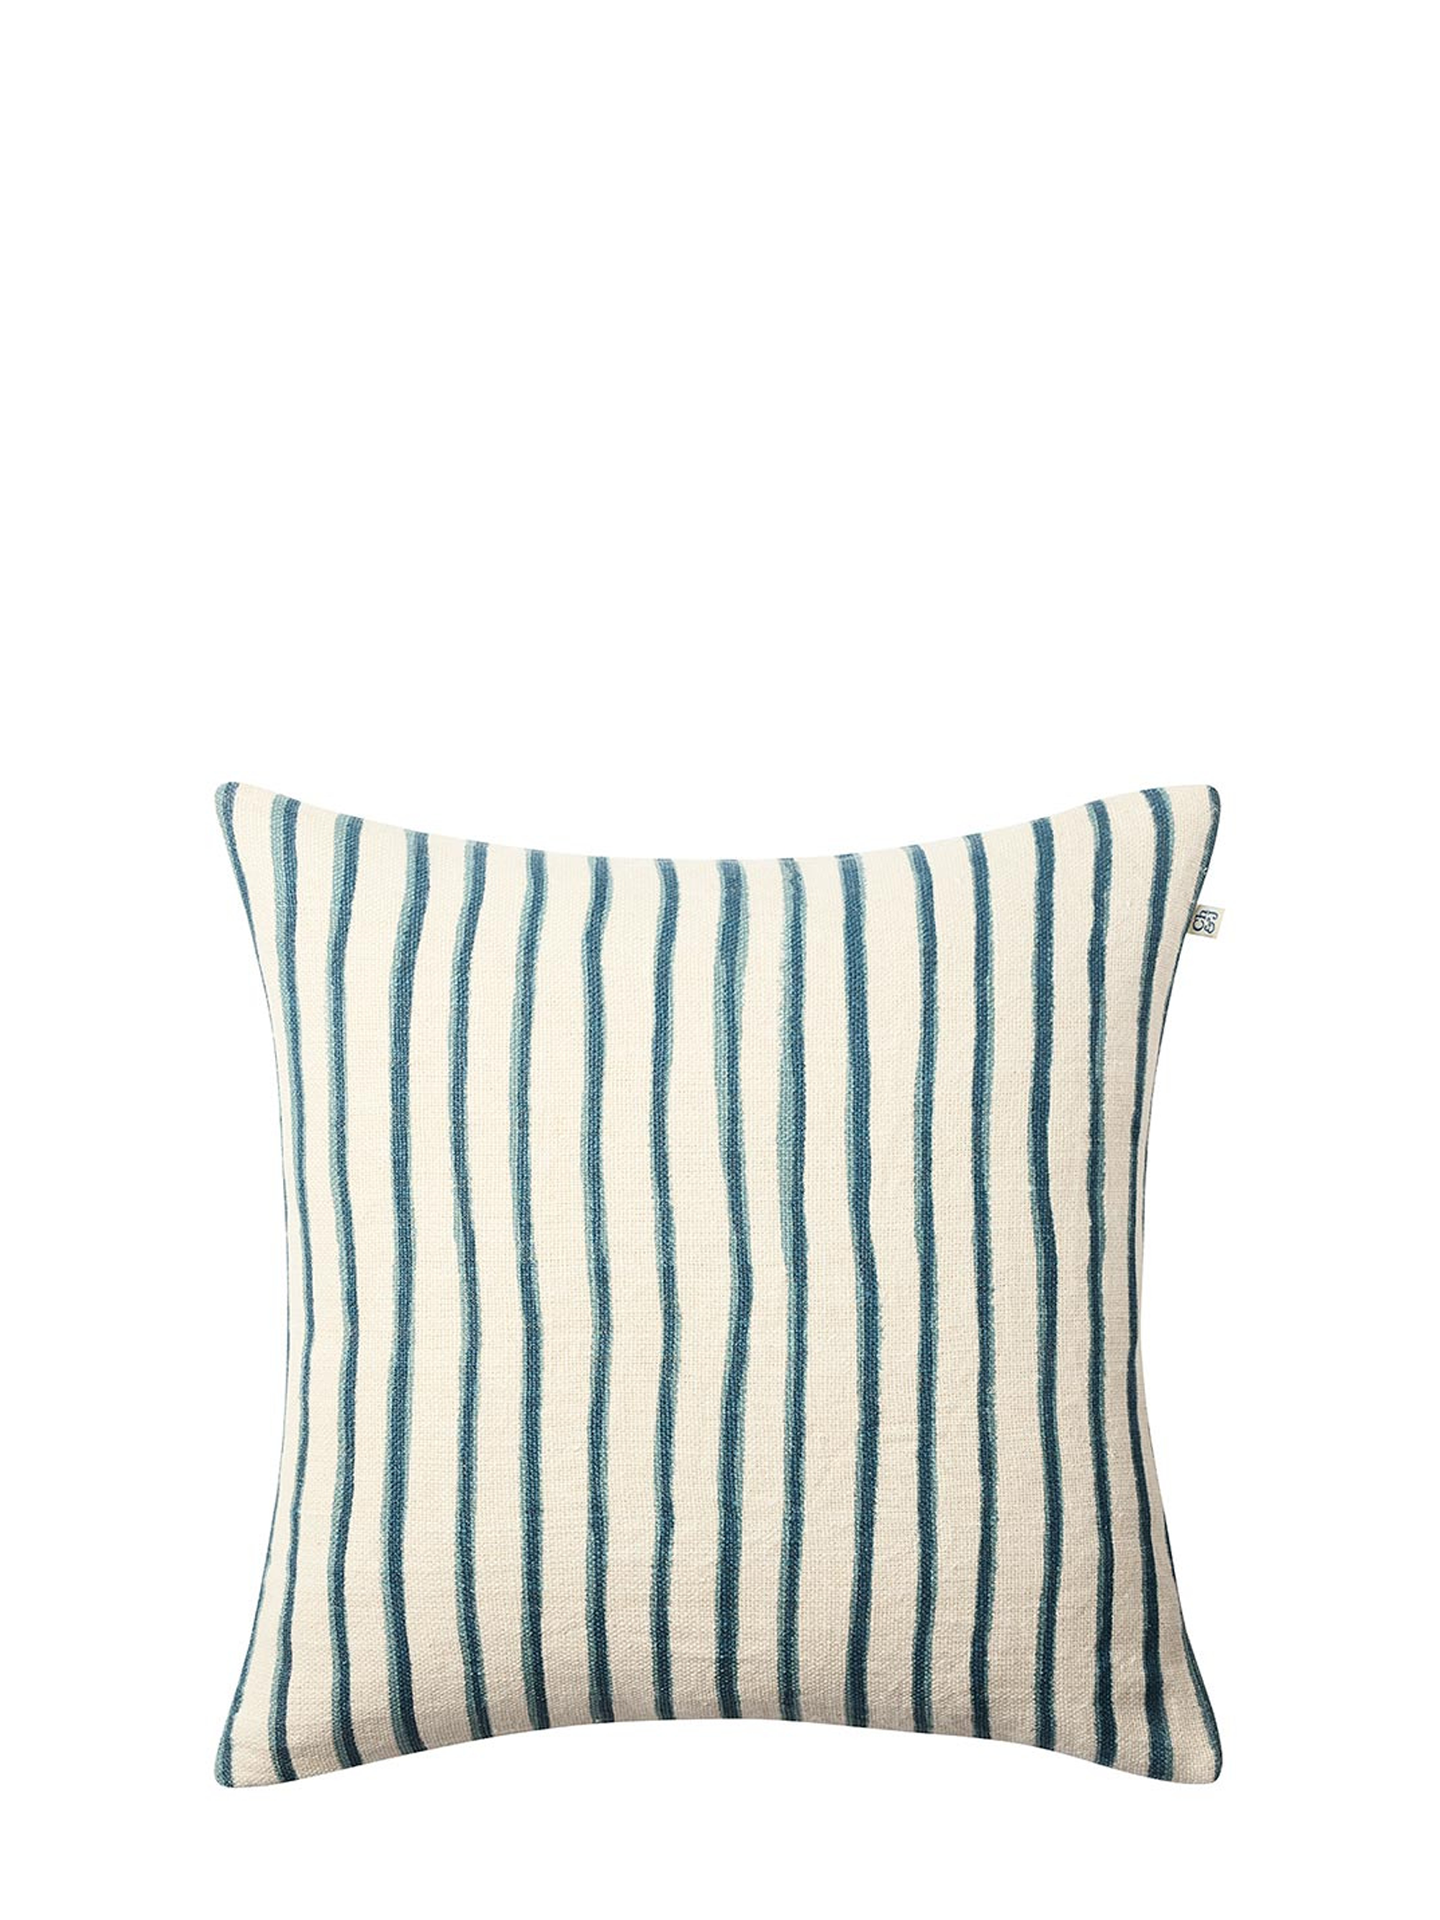 Jaipur Stripe Cushion Cover, Blue